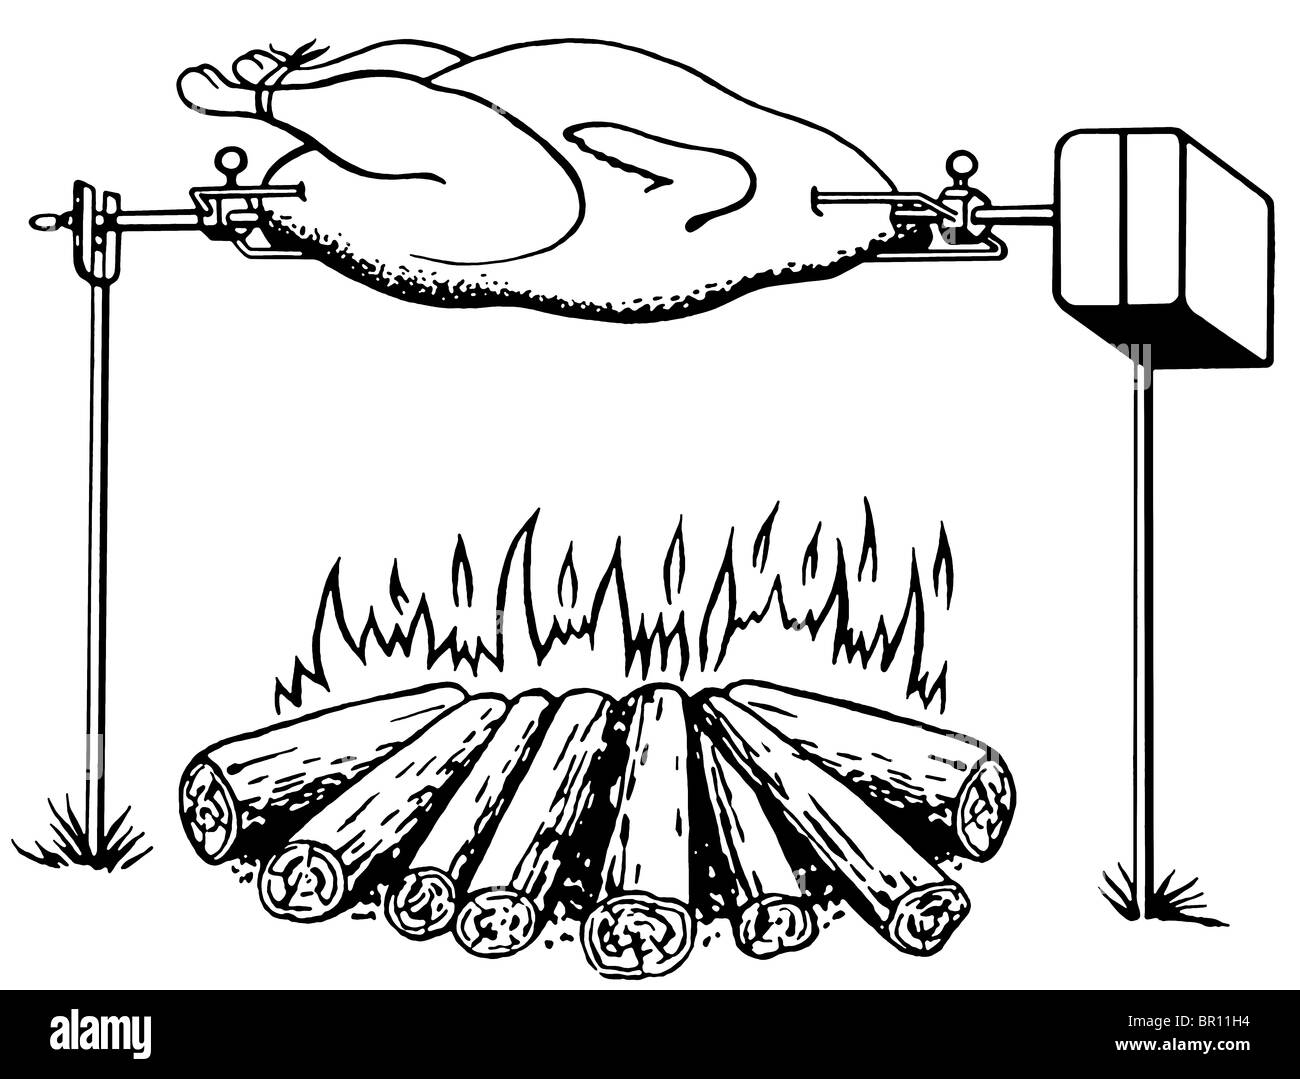 Une version noir et blanc d'une illustration d'un poulet griller sur un feu ouvert Banque D'Images